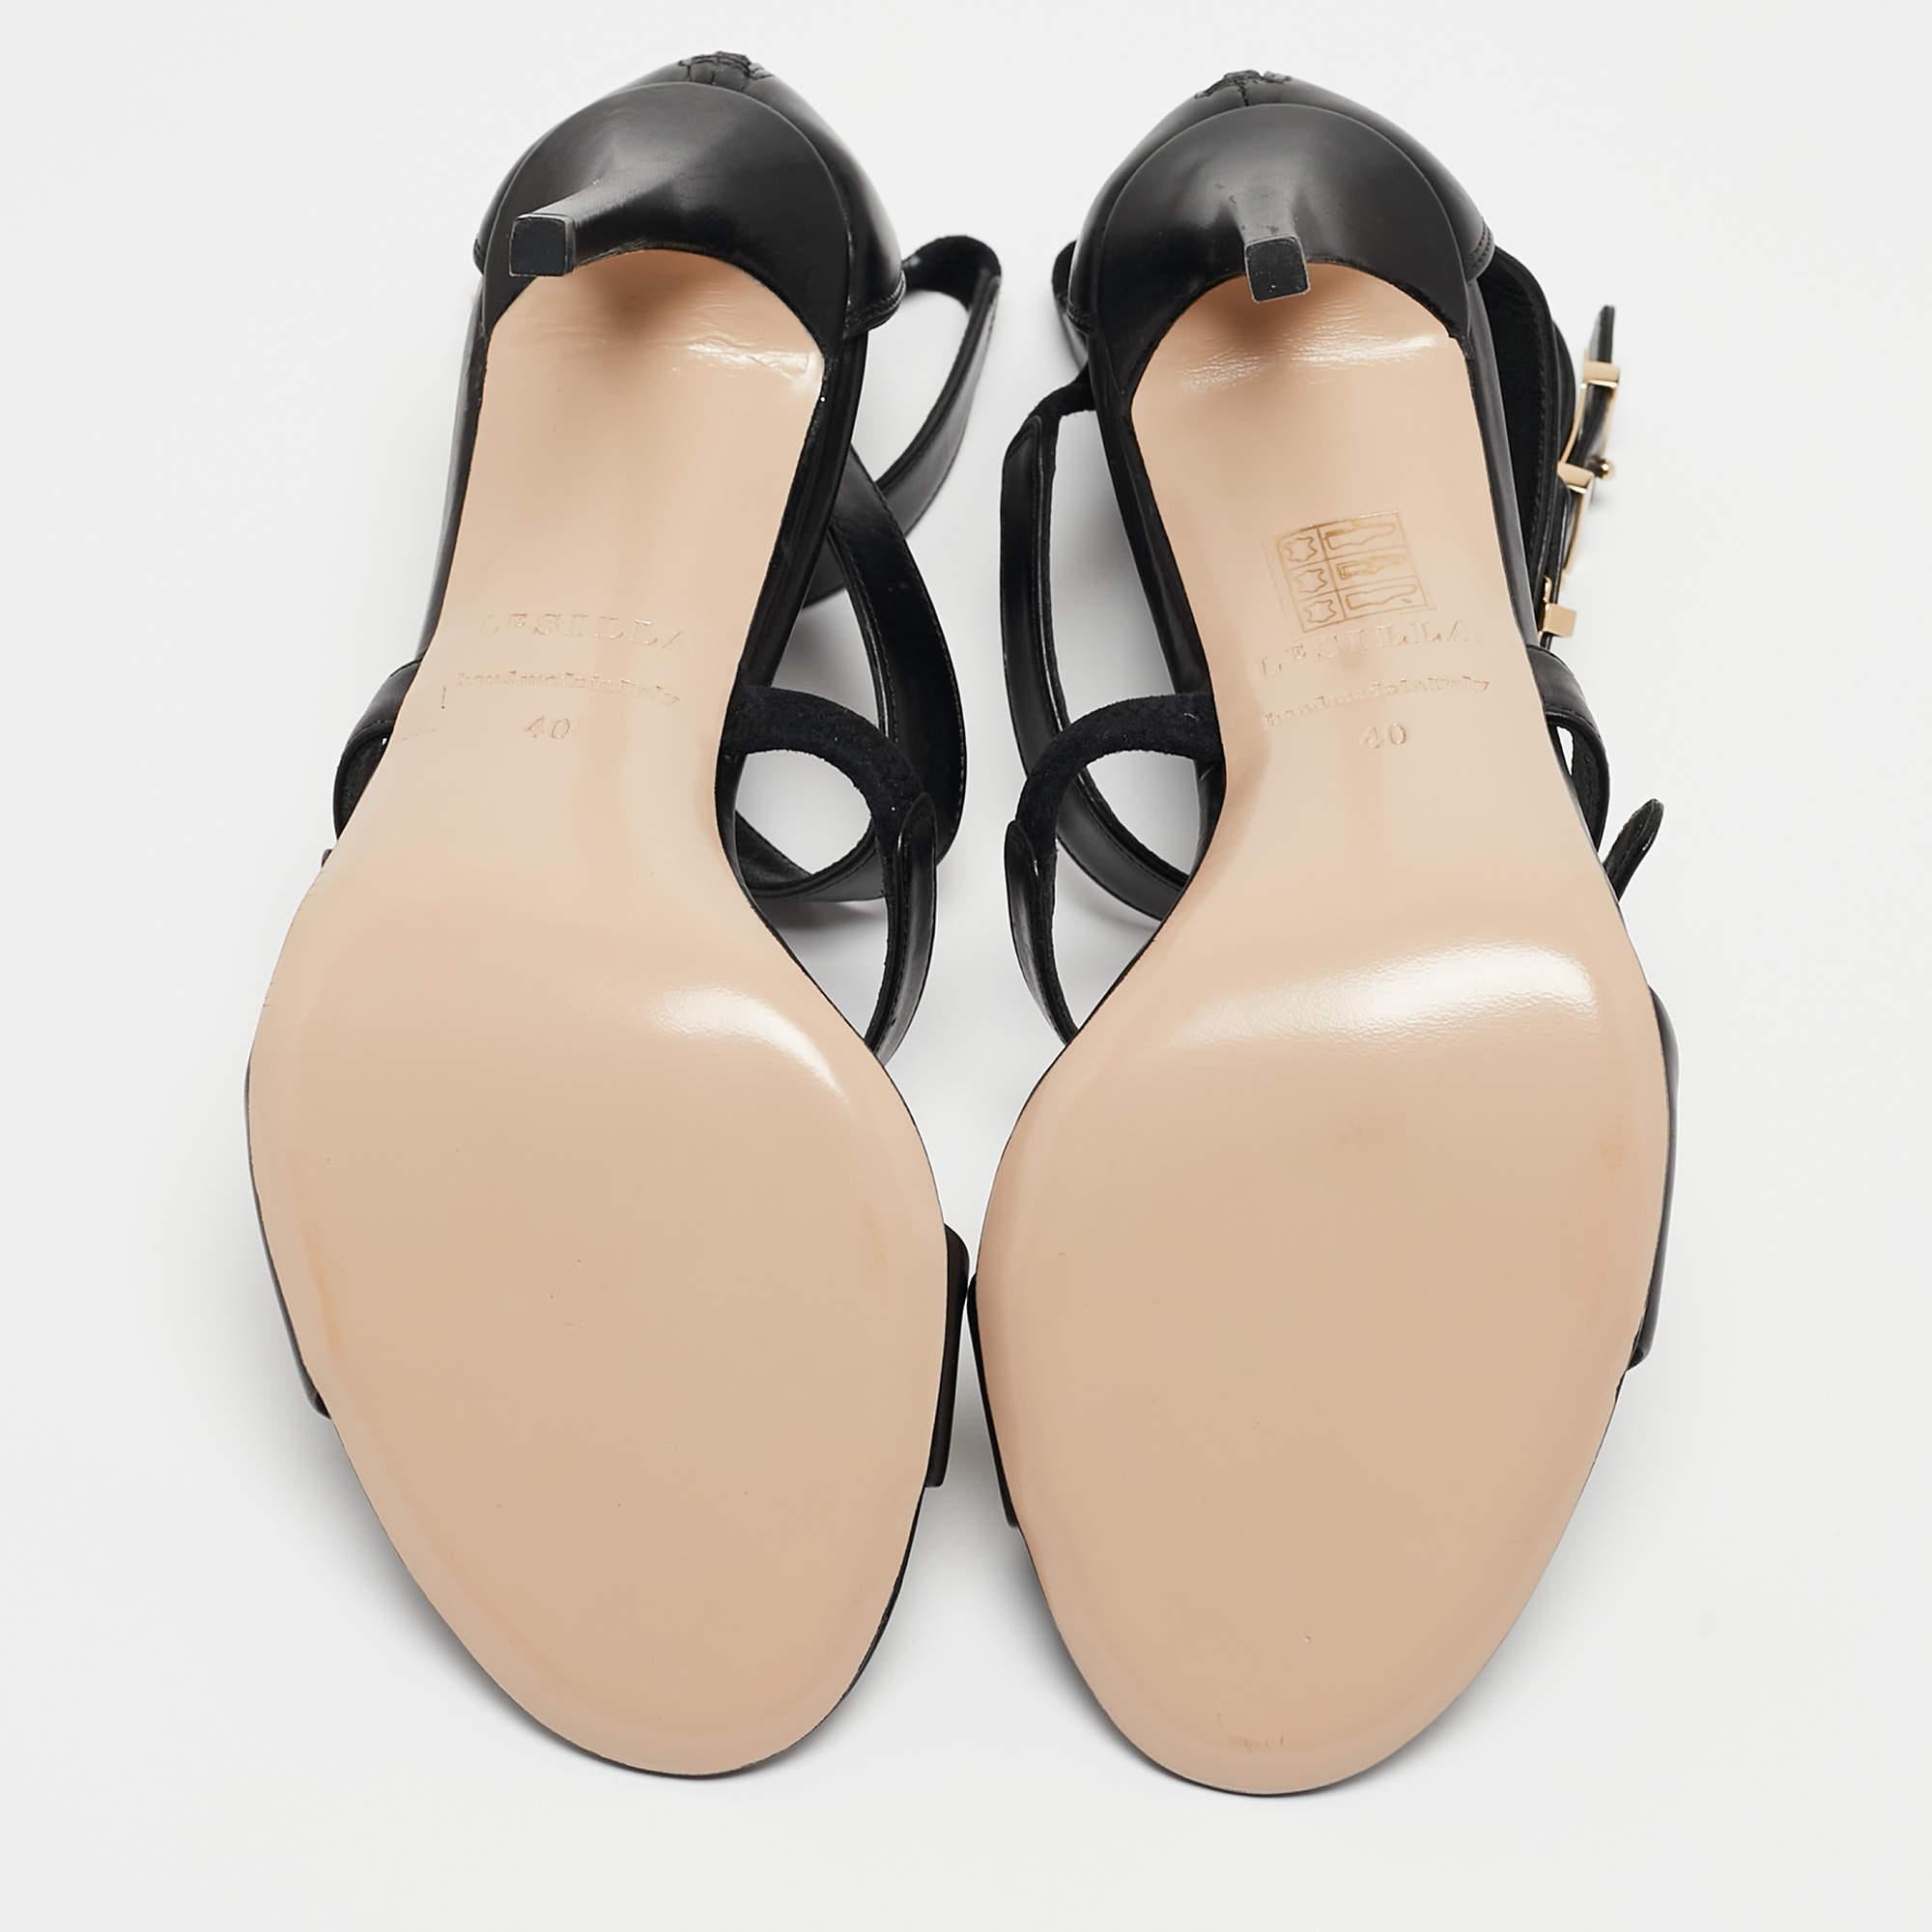 Le Silla Black Leather Minerva Strappy Sandals Size 40 7